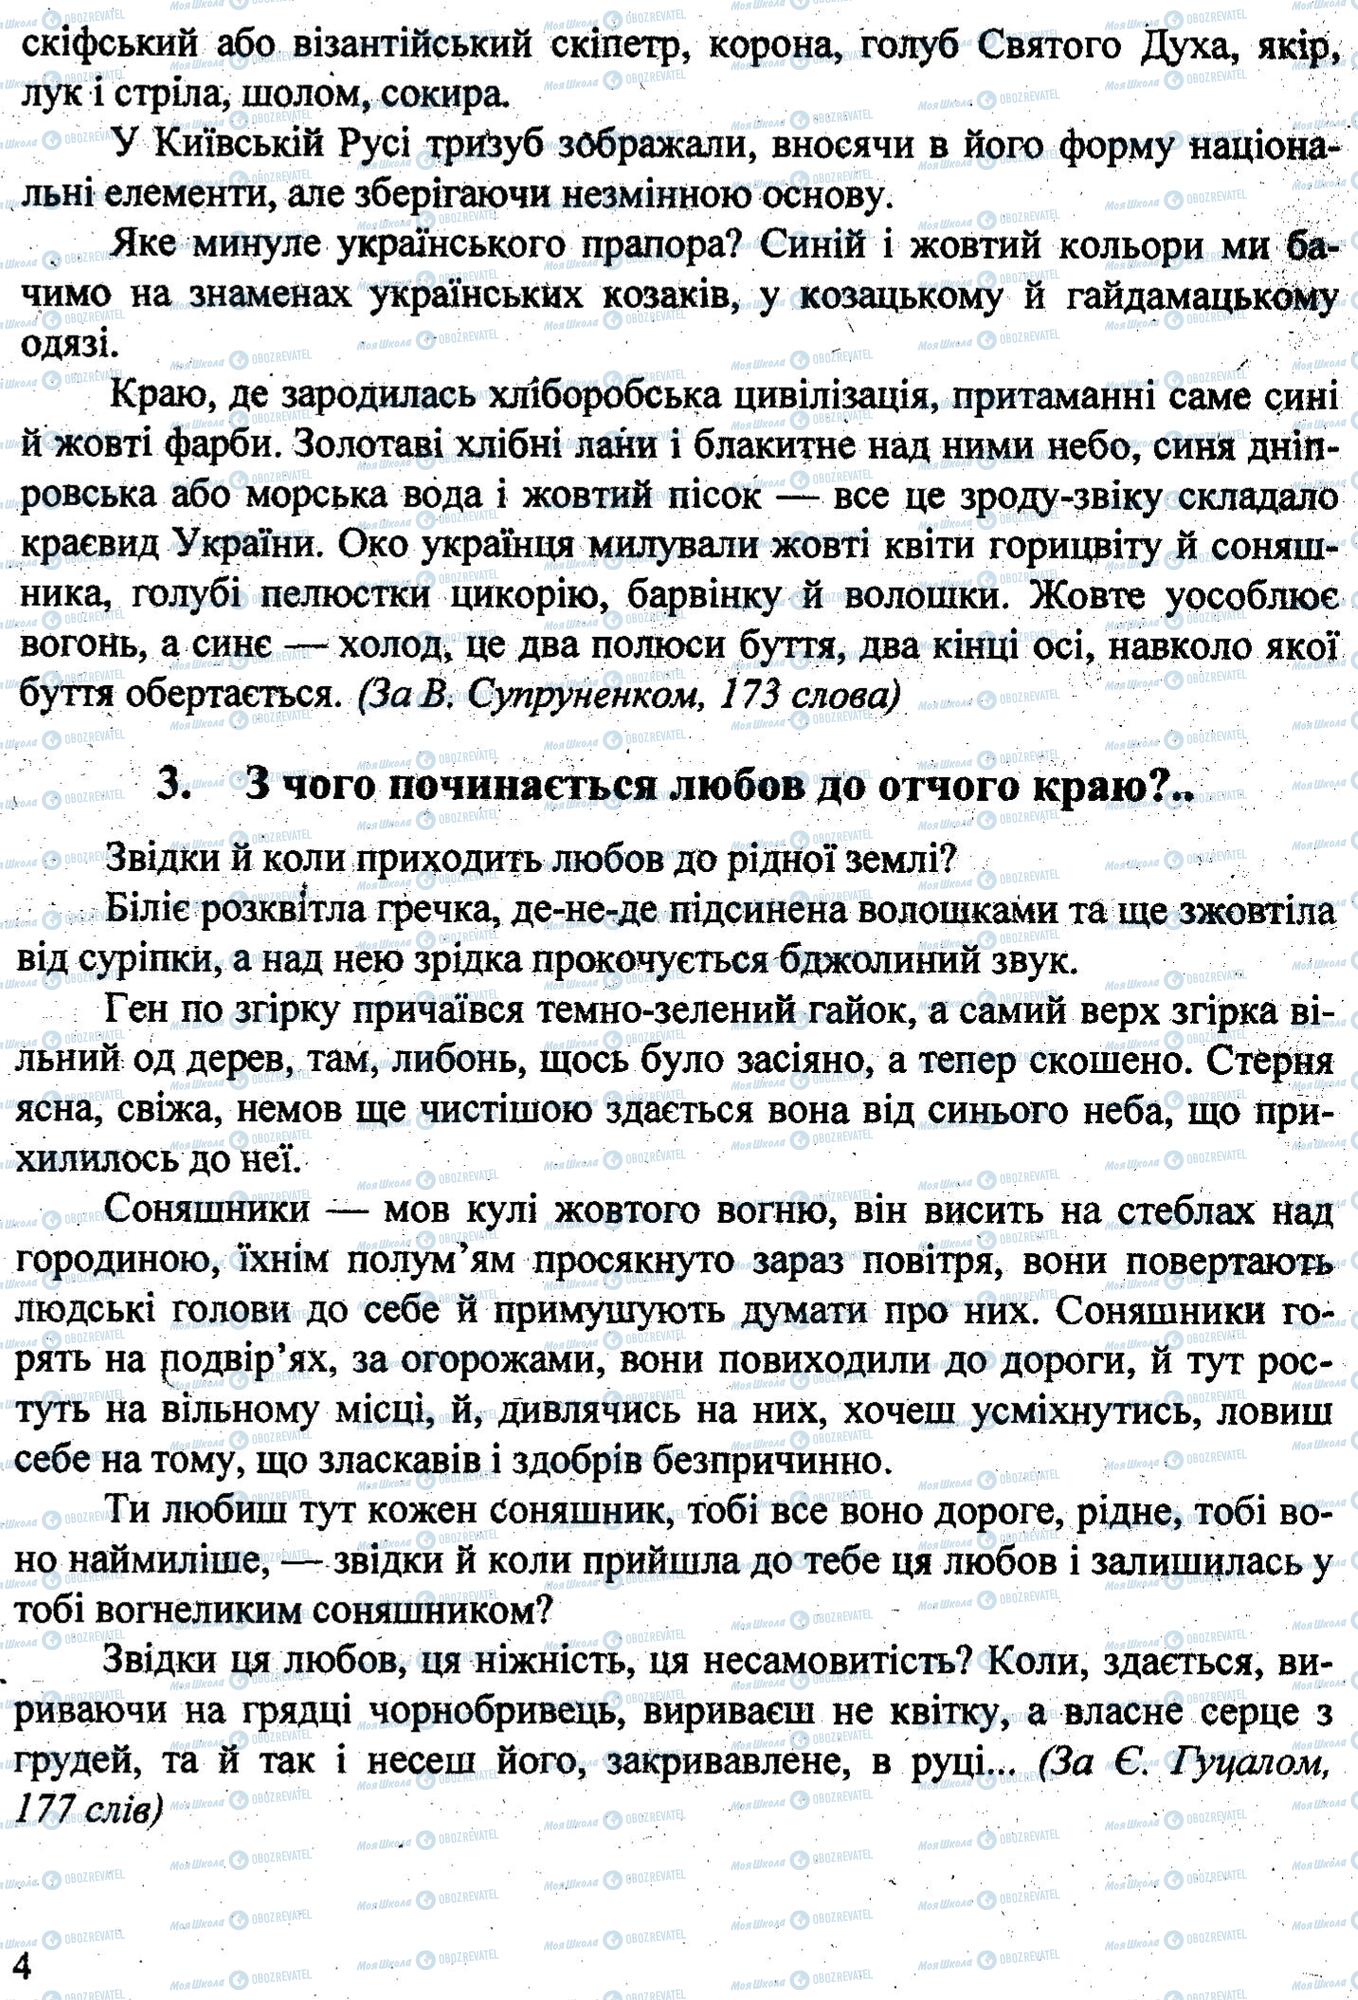 ДПА Укр мова 9 класс страница 0003